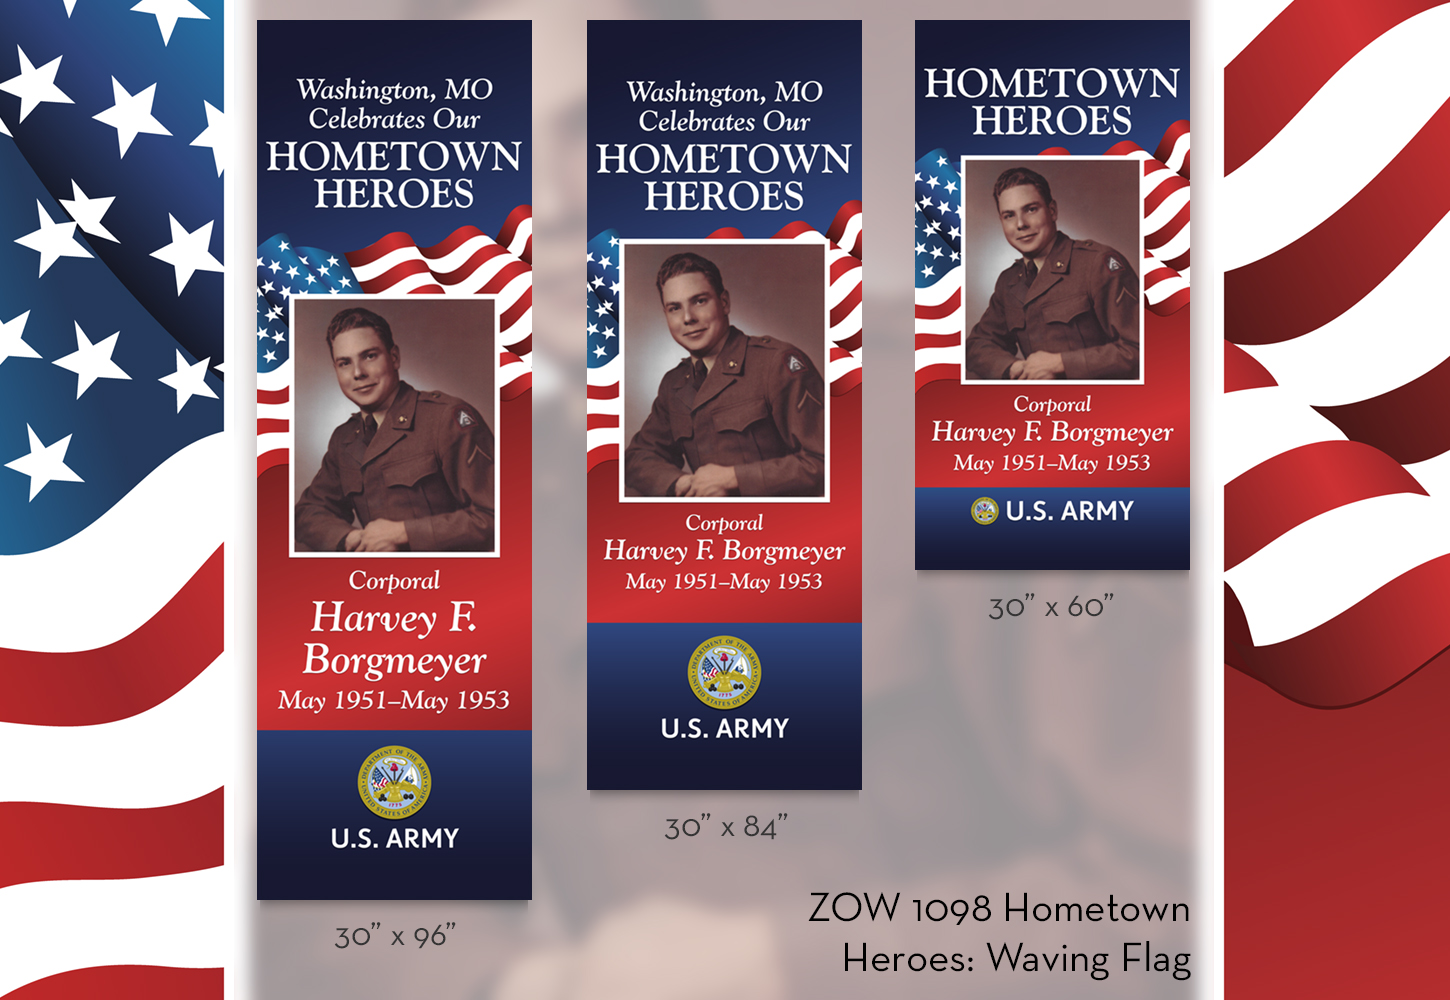 ZOW 1098 Hometown Heroes: Waving Flag